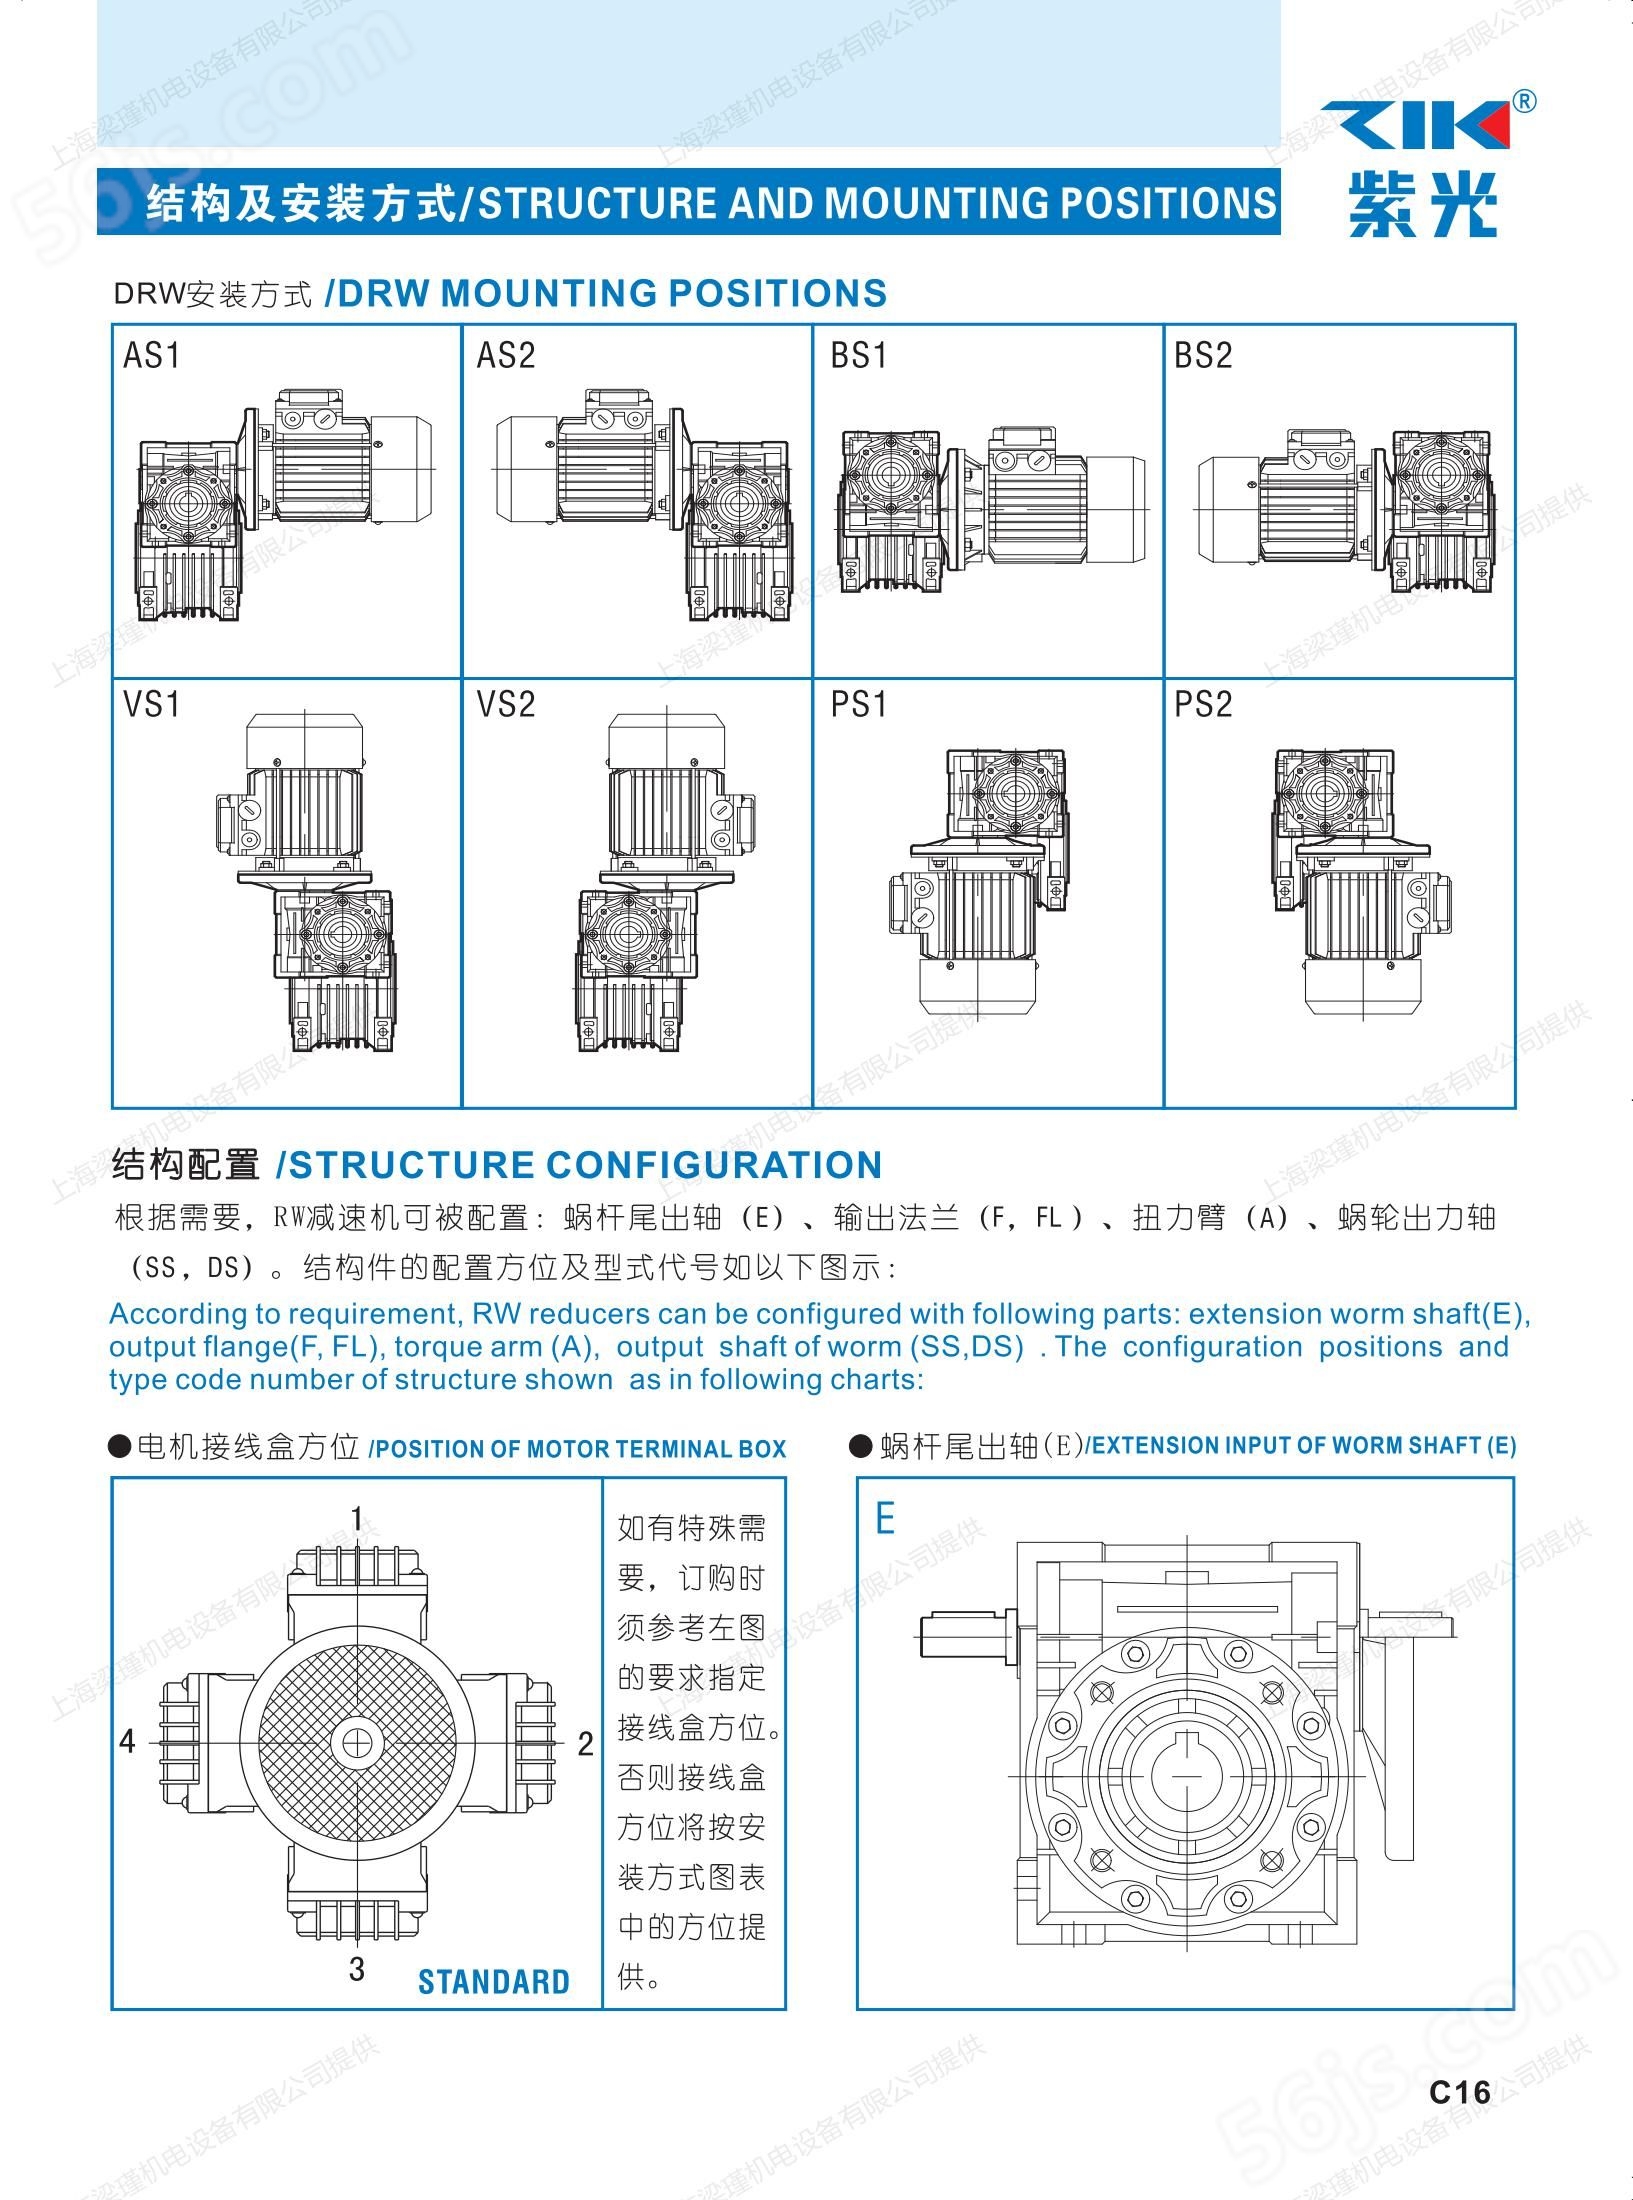 ZIK紫光减速机销售,NMRW050-50-MS7134-B5蜗轮蜗杆减速电机,上海梁瑾机电设备有限公司